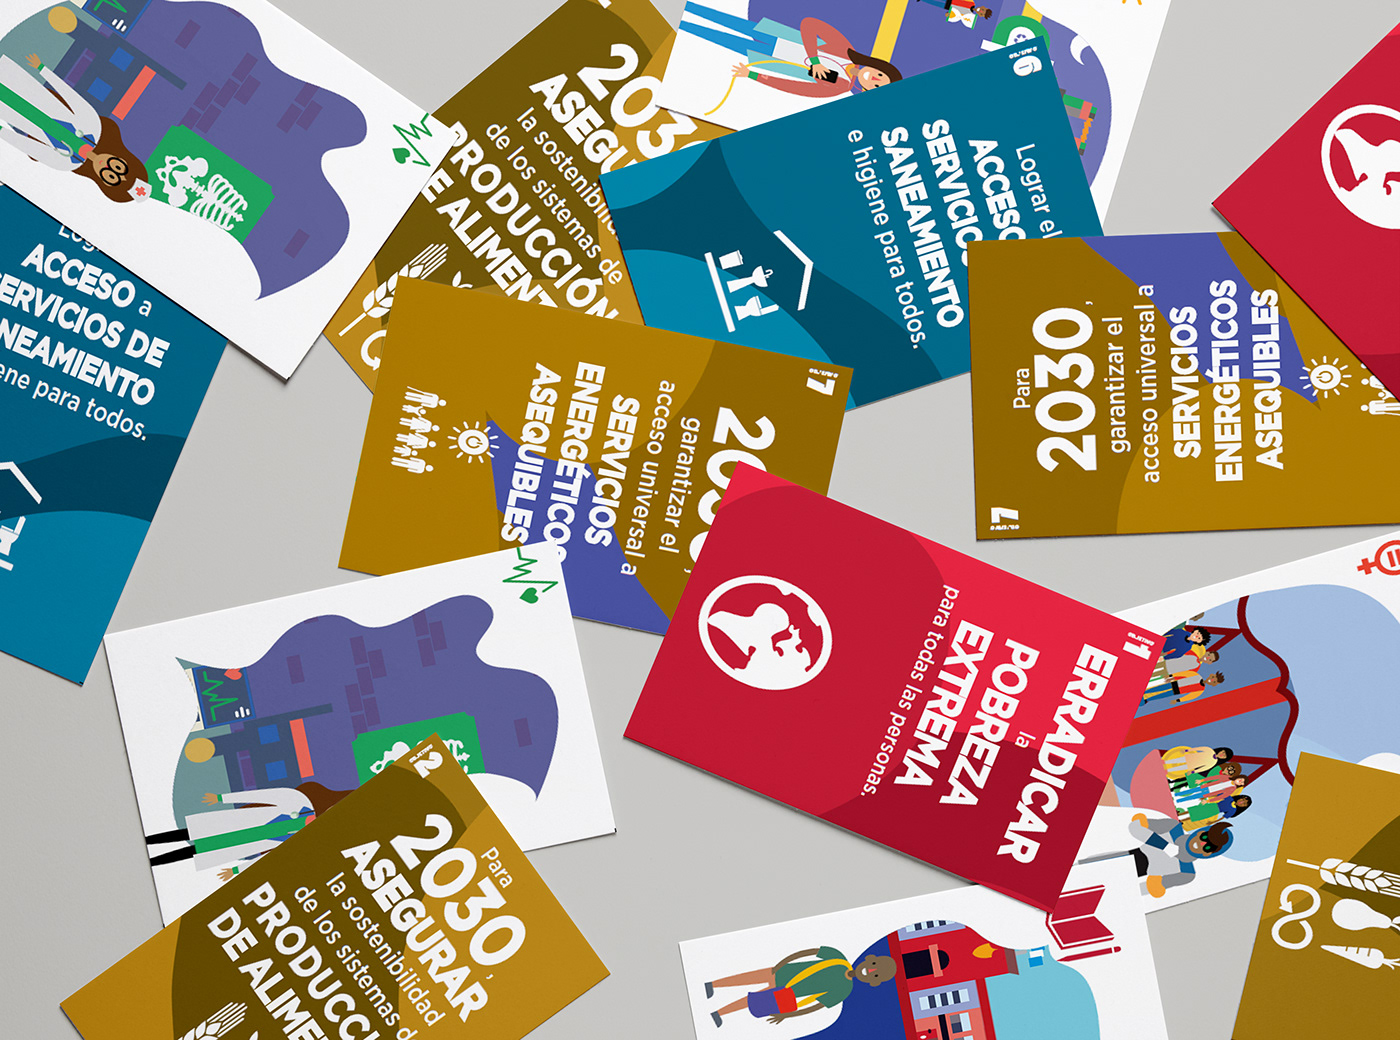 Flash Cards Pedagogy ods onu desarrollo sostenible